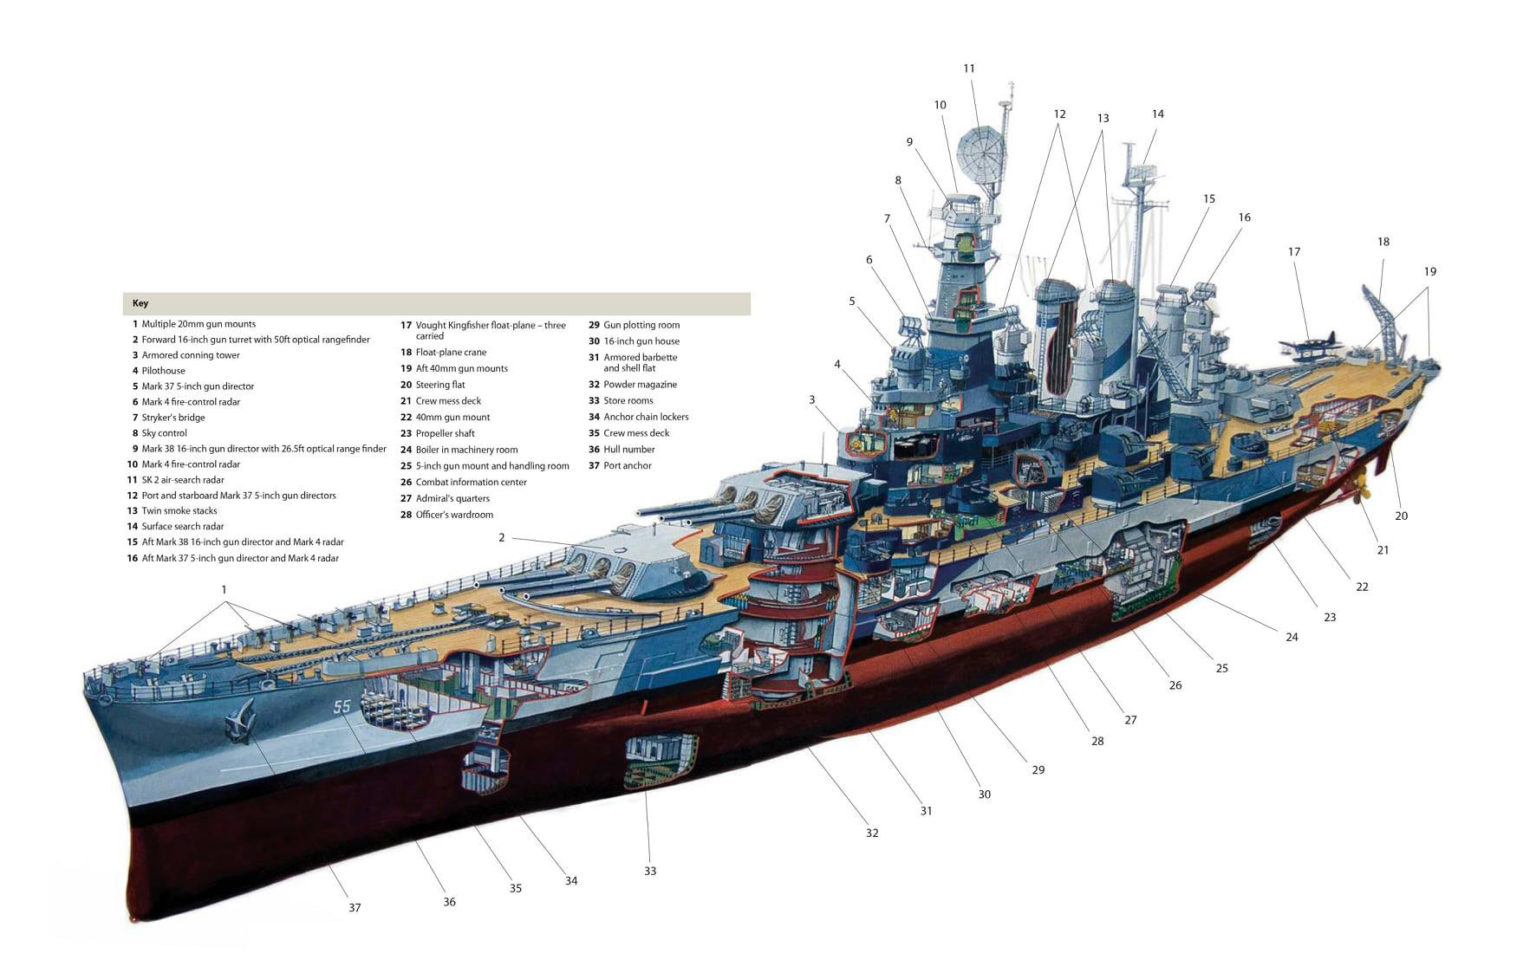 north carolina class battleship world of warships